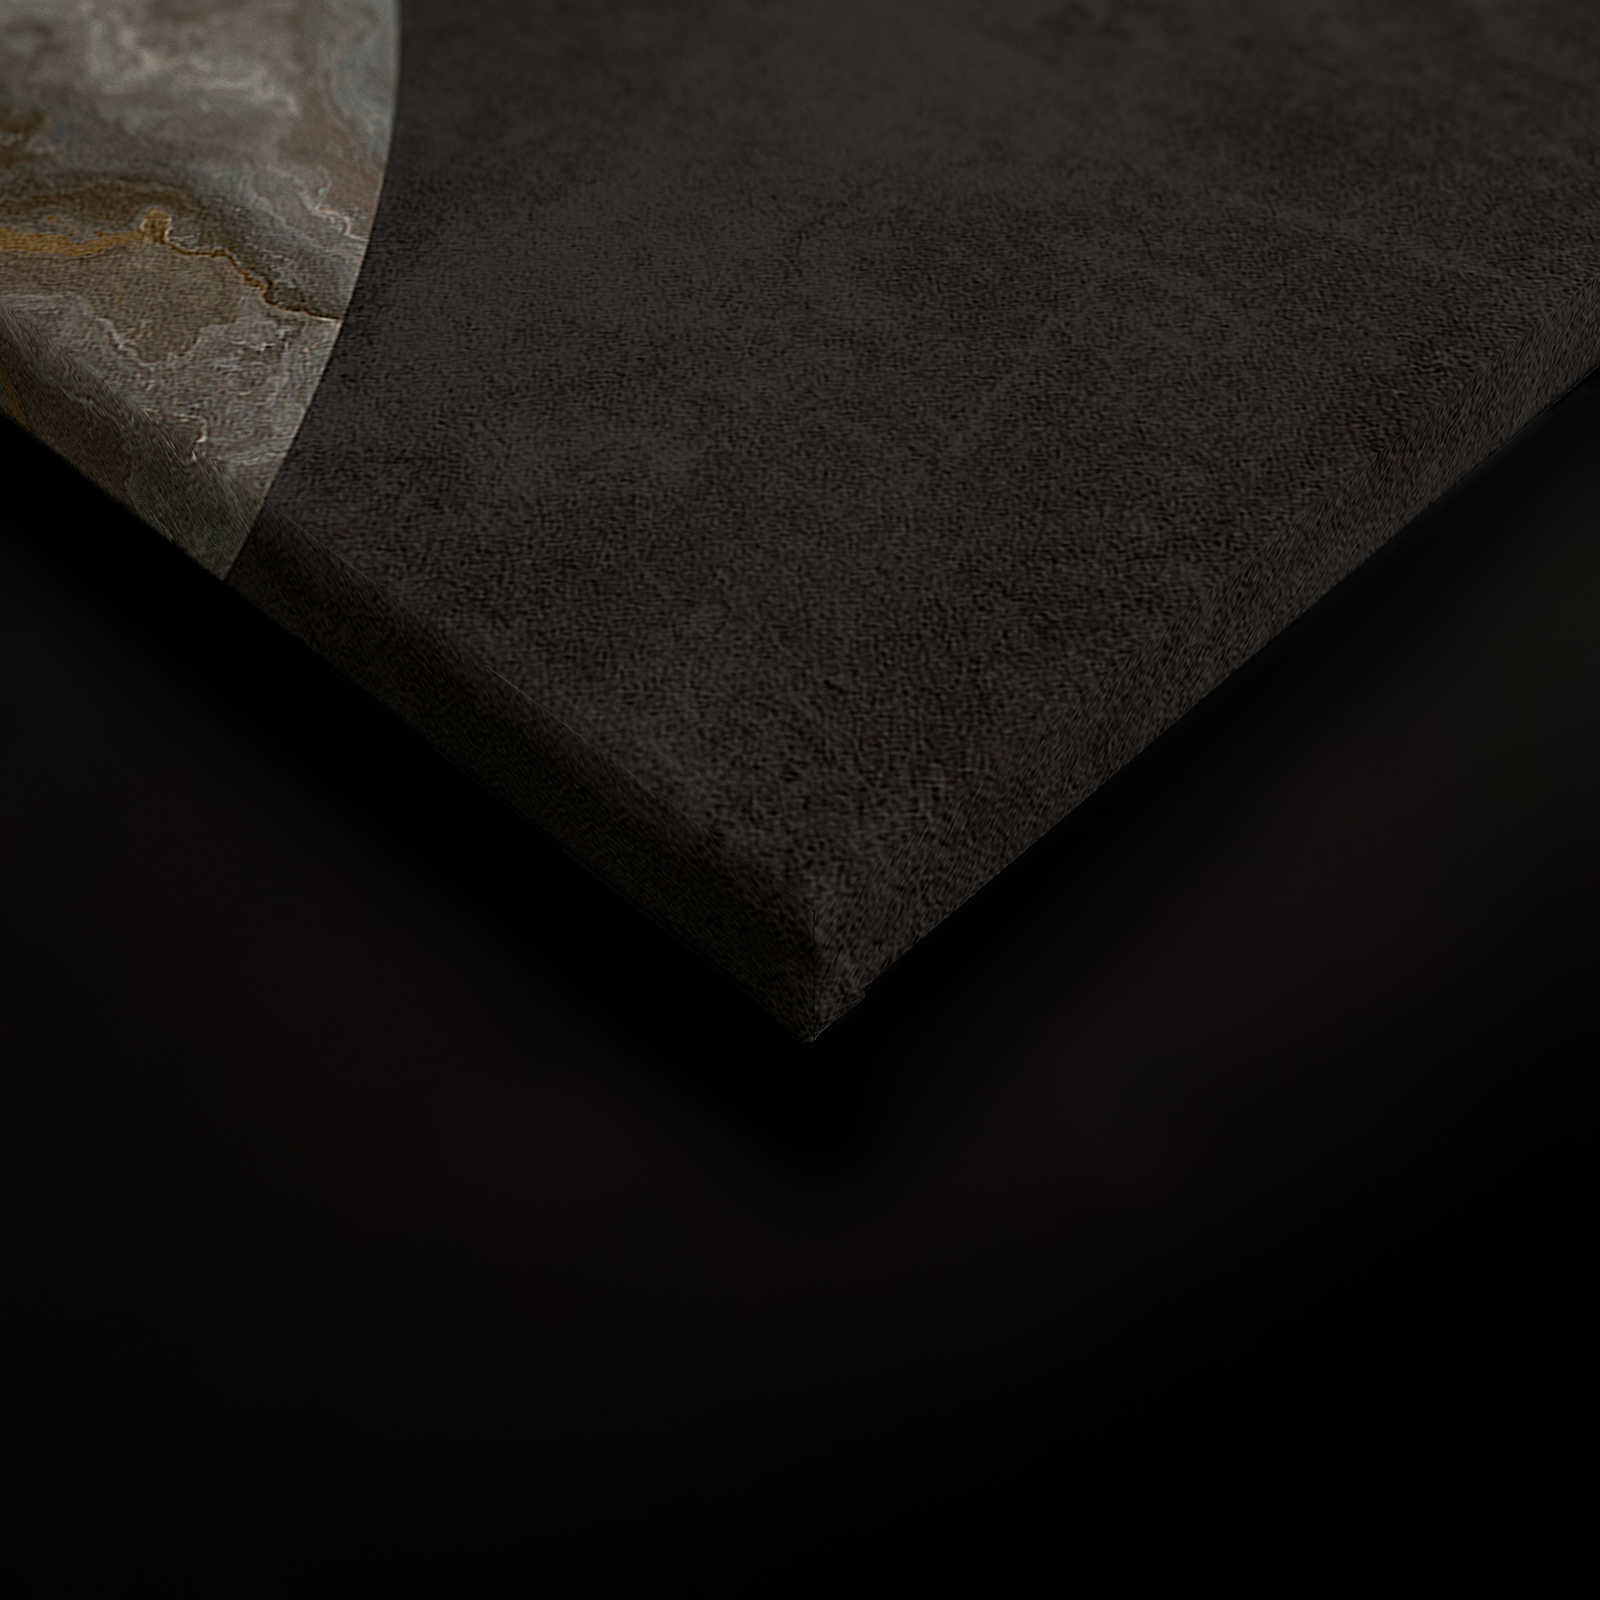             Luna 1 - Marbre toile cercle design & aspect plâtre noir - 1,20 m x 0,80 m
        